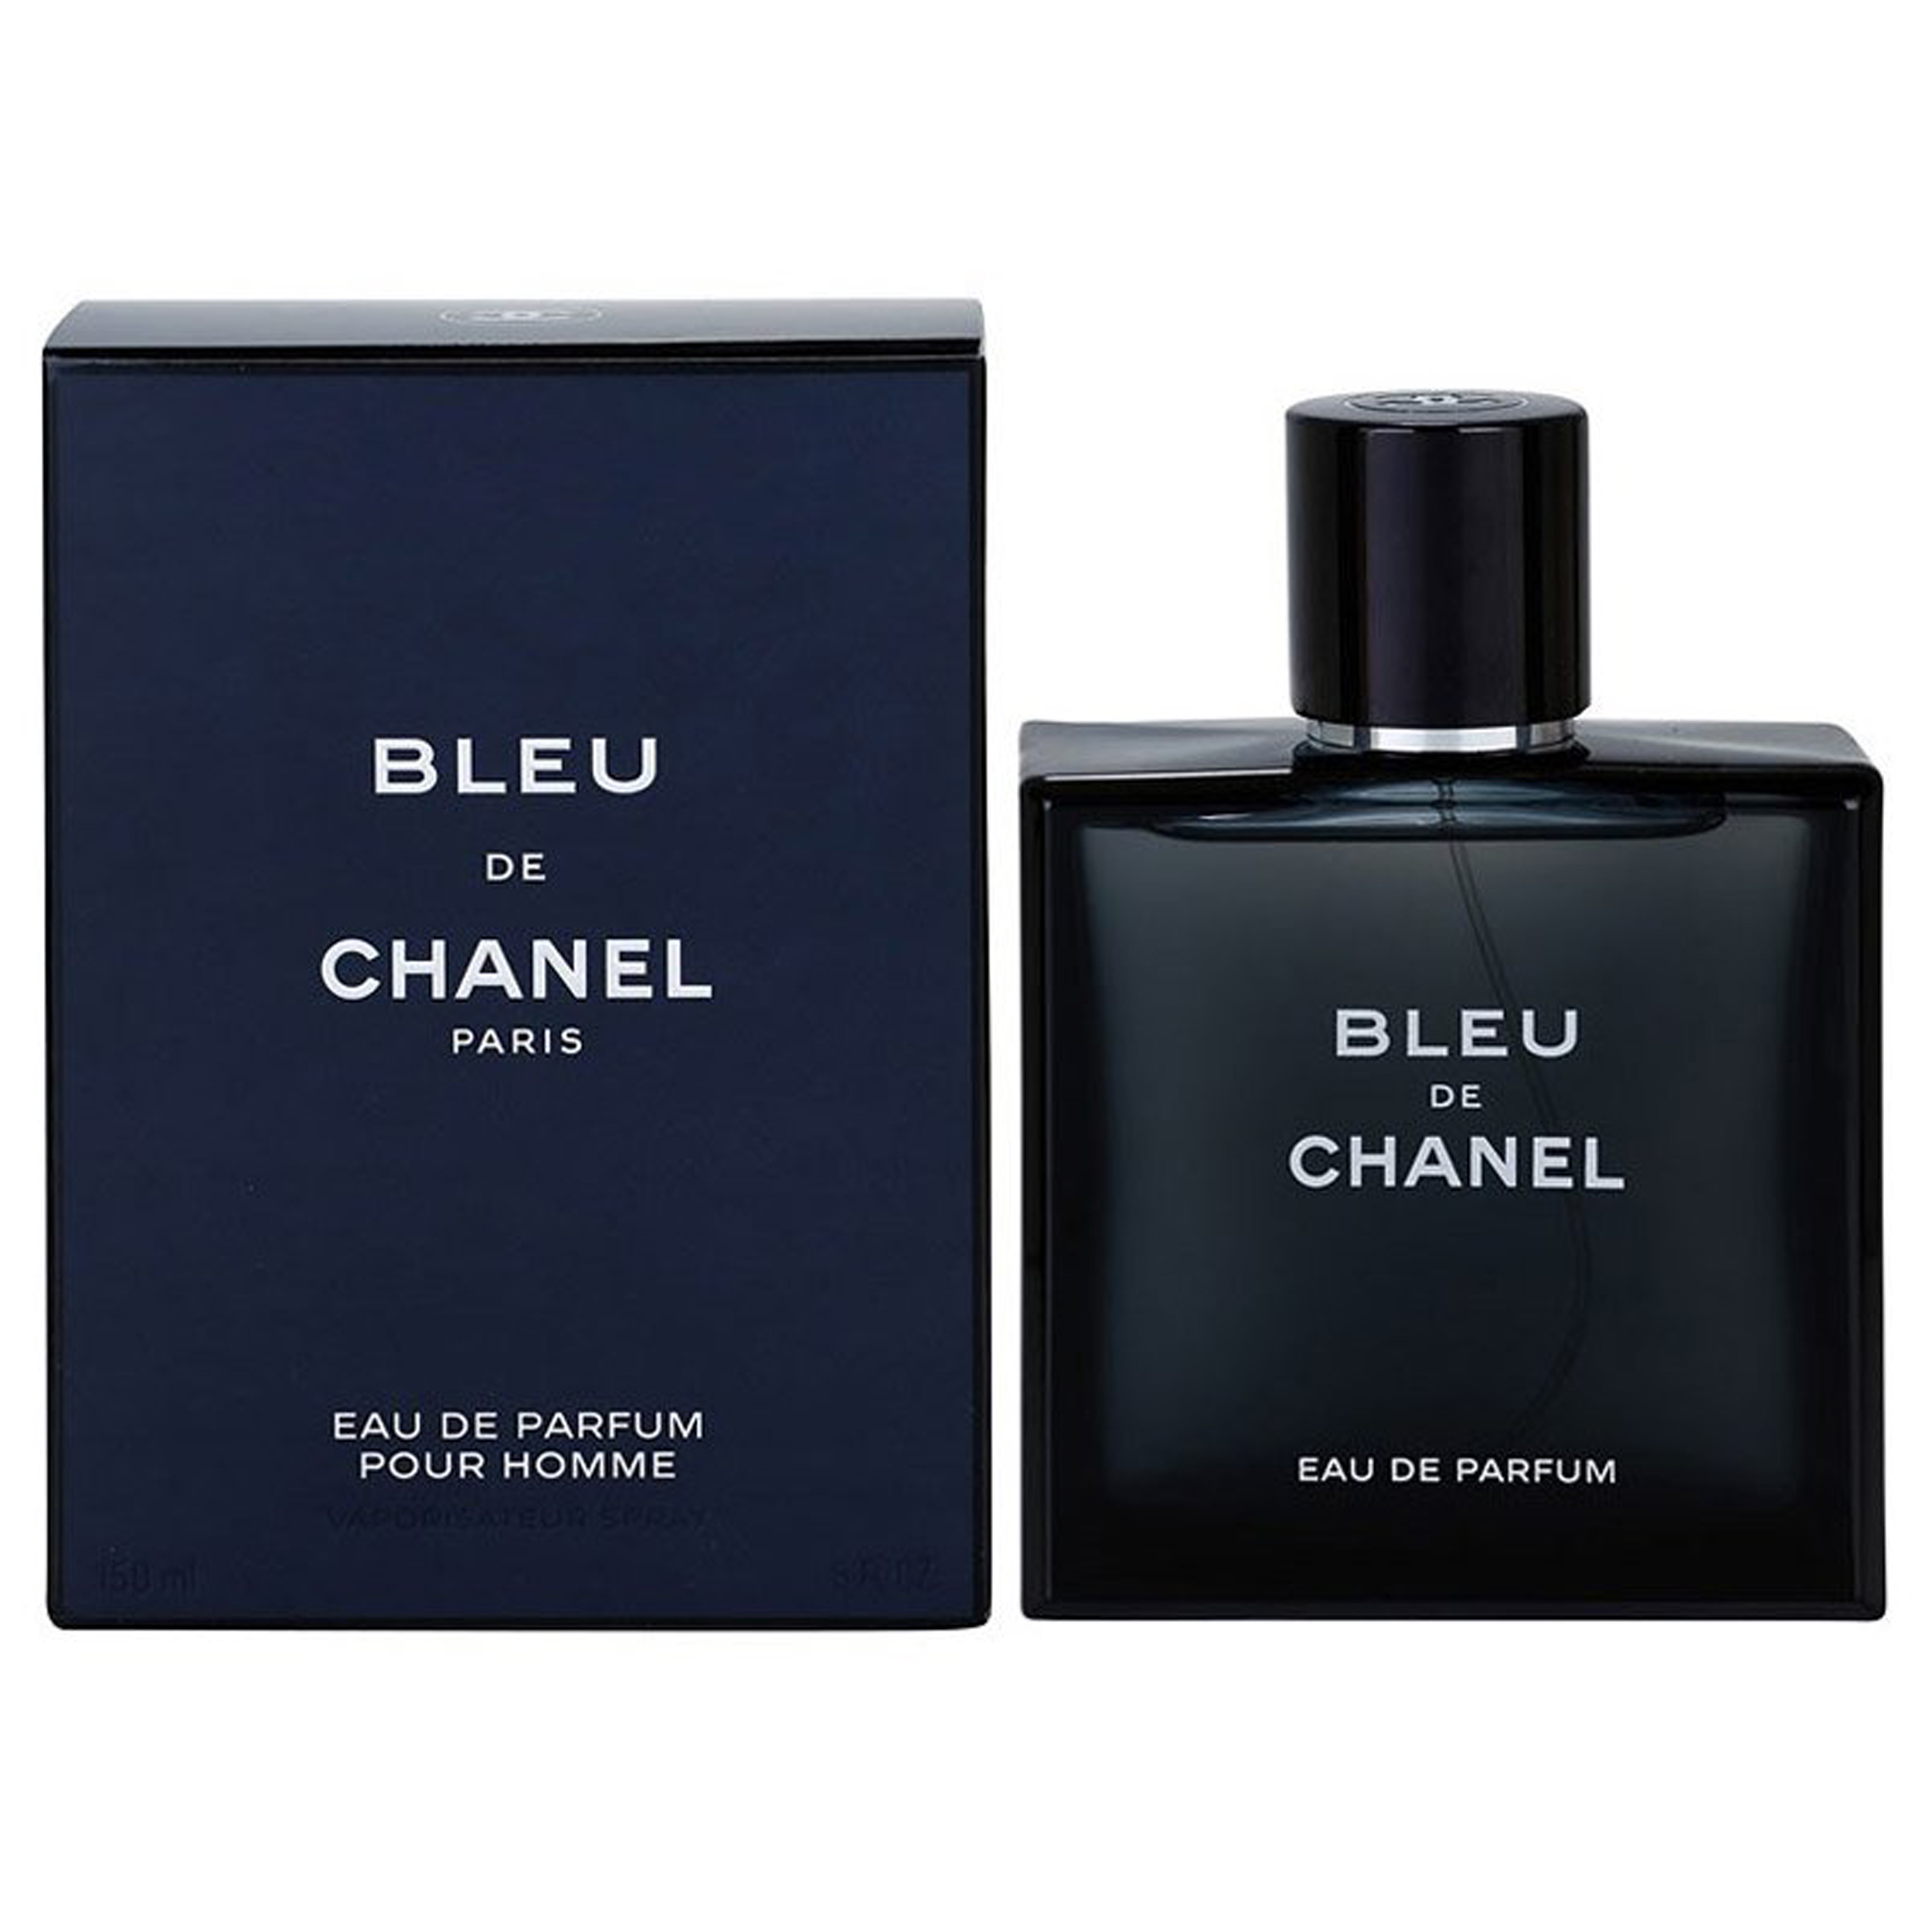 ادو پرفیوم مردانه شانل مدل Bleu de Chanel حجم 100 میلی لیتر